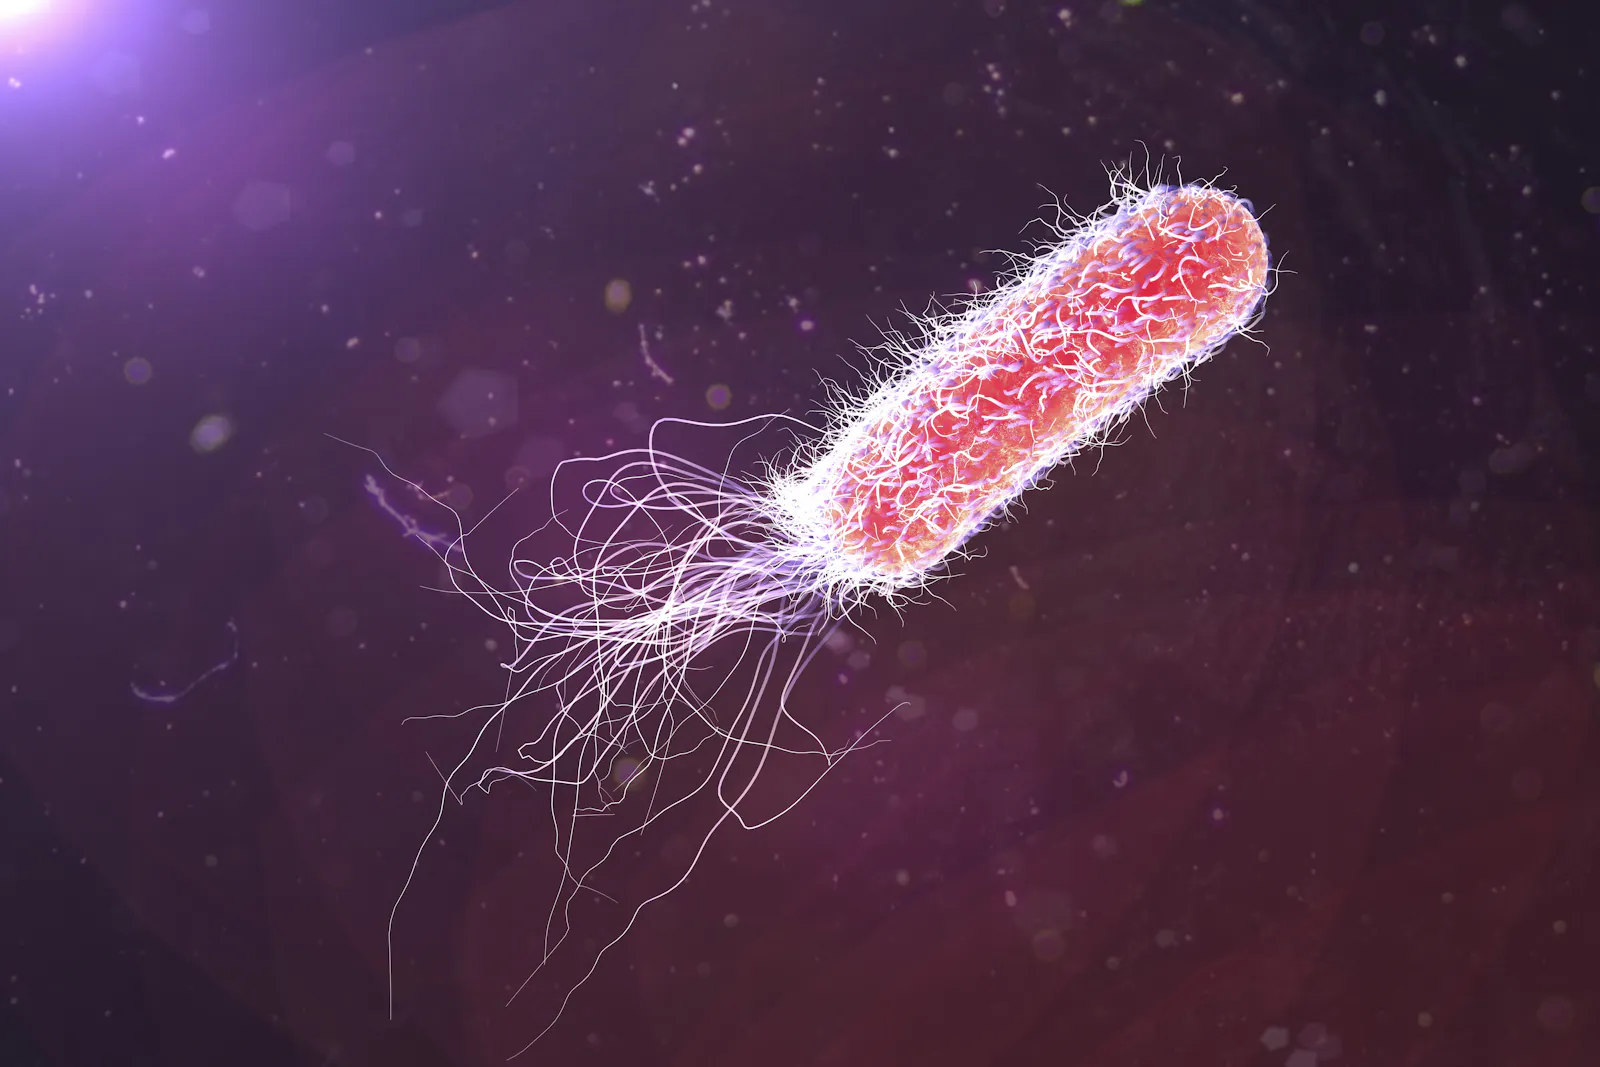 Bakterium Pseudomonas aeruginosa (Quelle: Shutterstock)